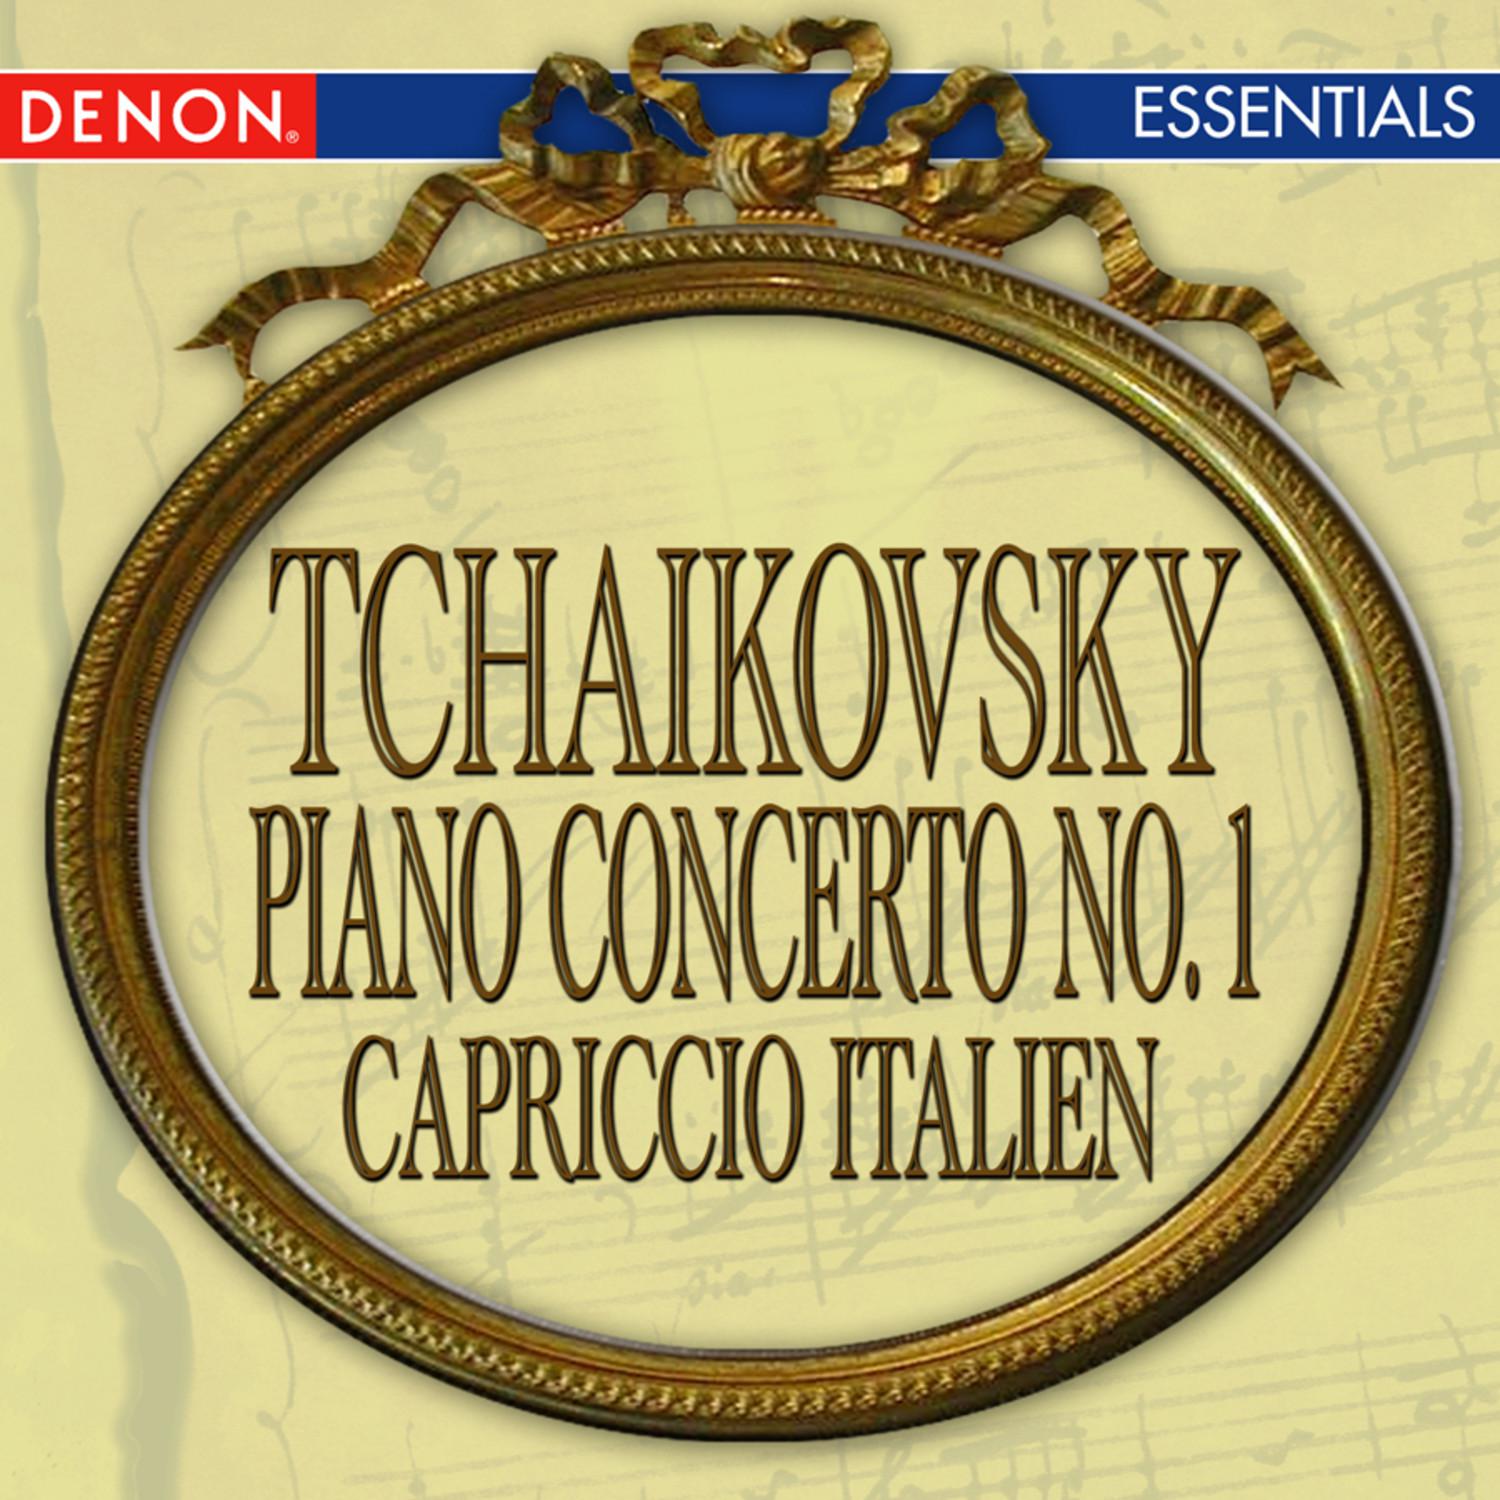 Tchaikovsky: Piano Concerto No. 1 - Capriccio Italien